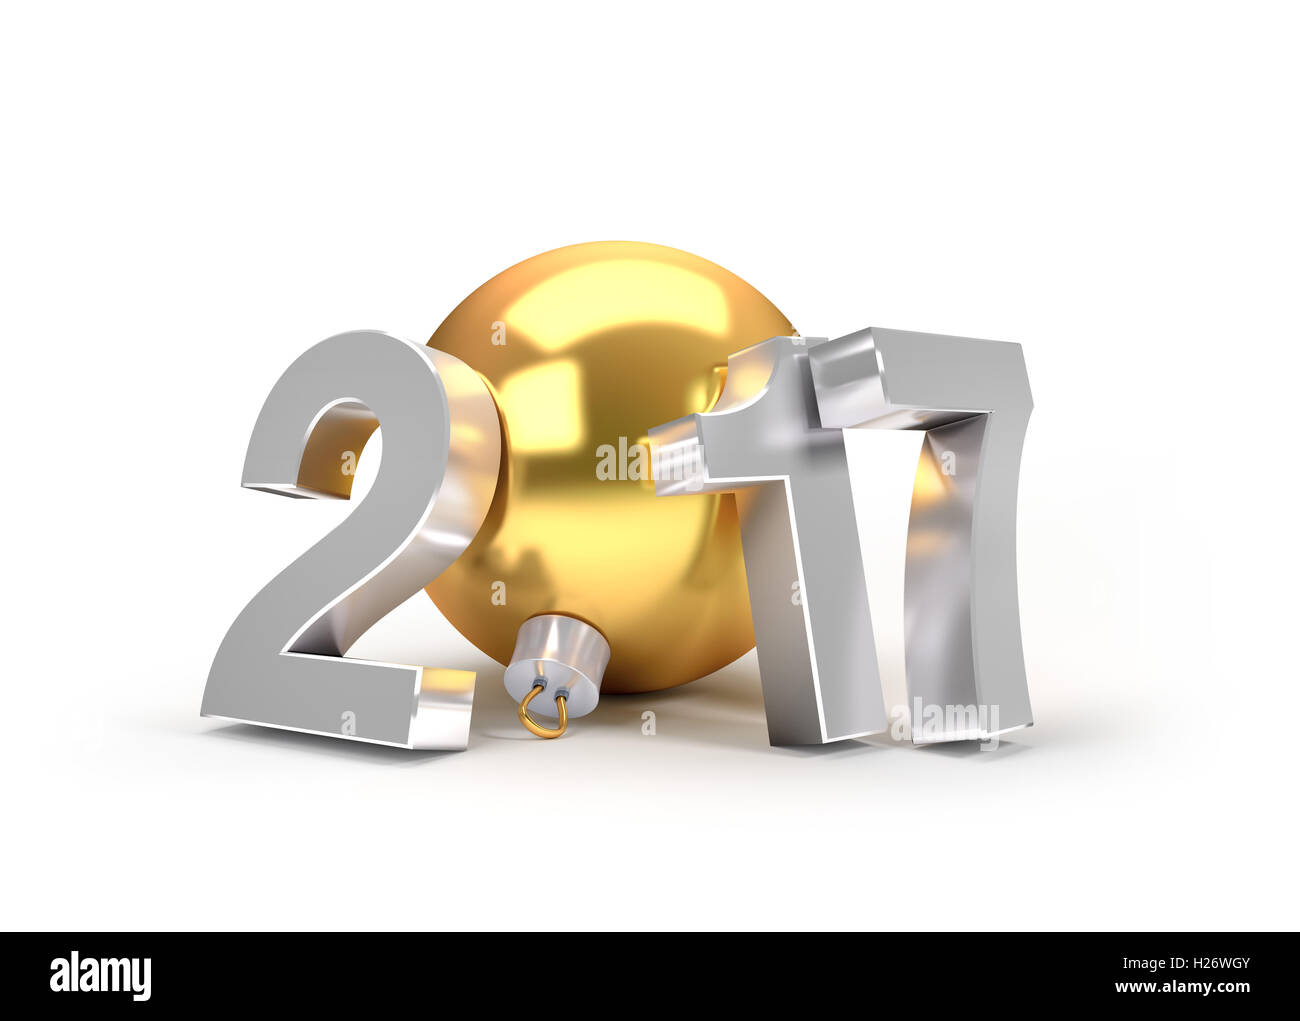 Neue Jahr 2017 Typ mit einem gold Christmas Ball - 3D-Illustration Stockfoto